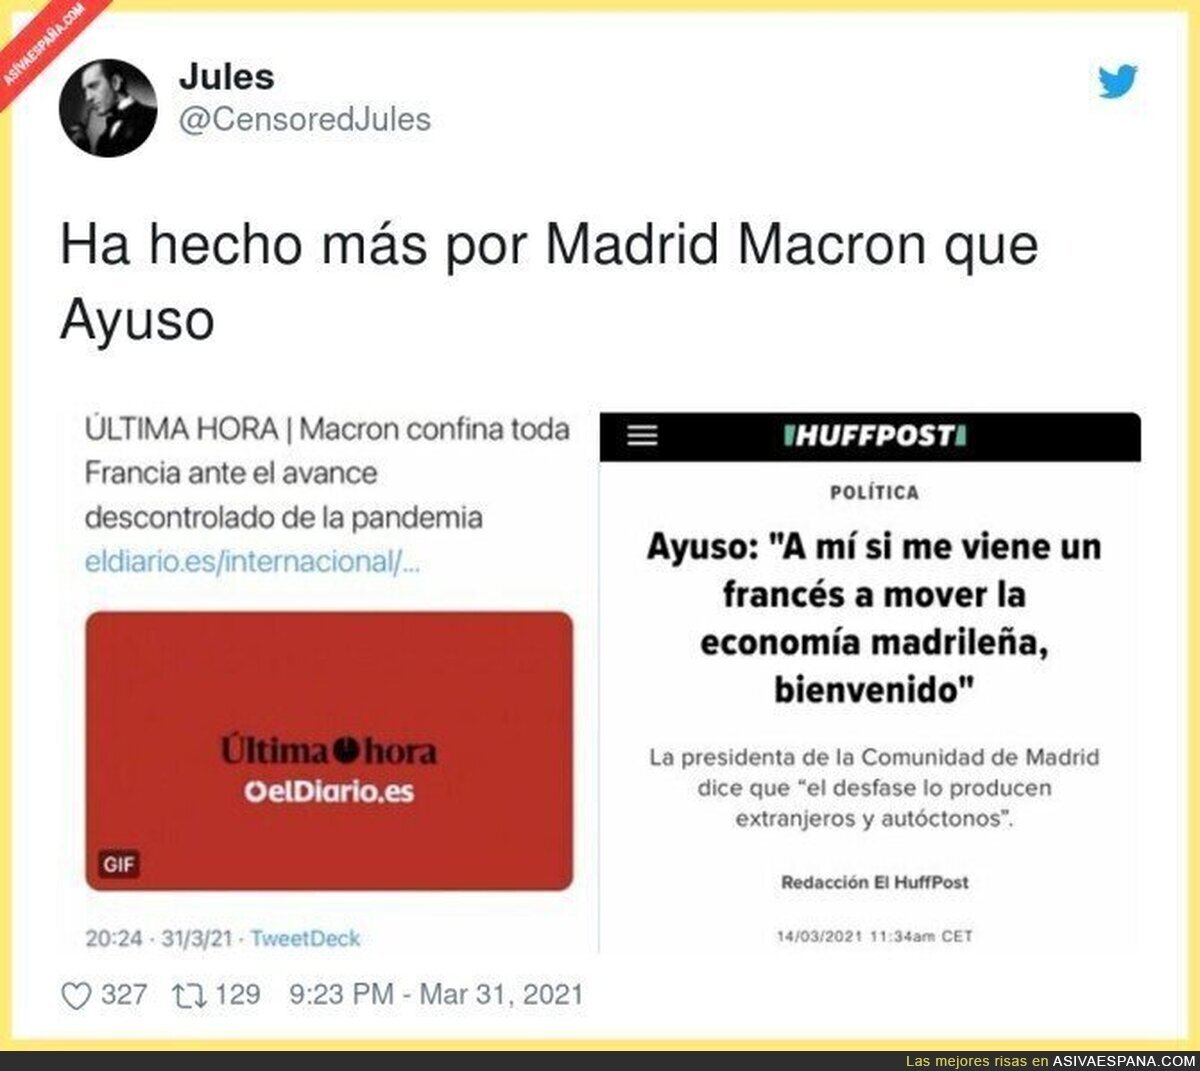 Macron salva a España de muchas más muertes